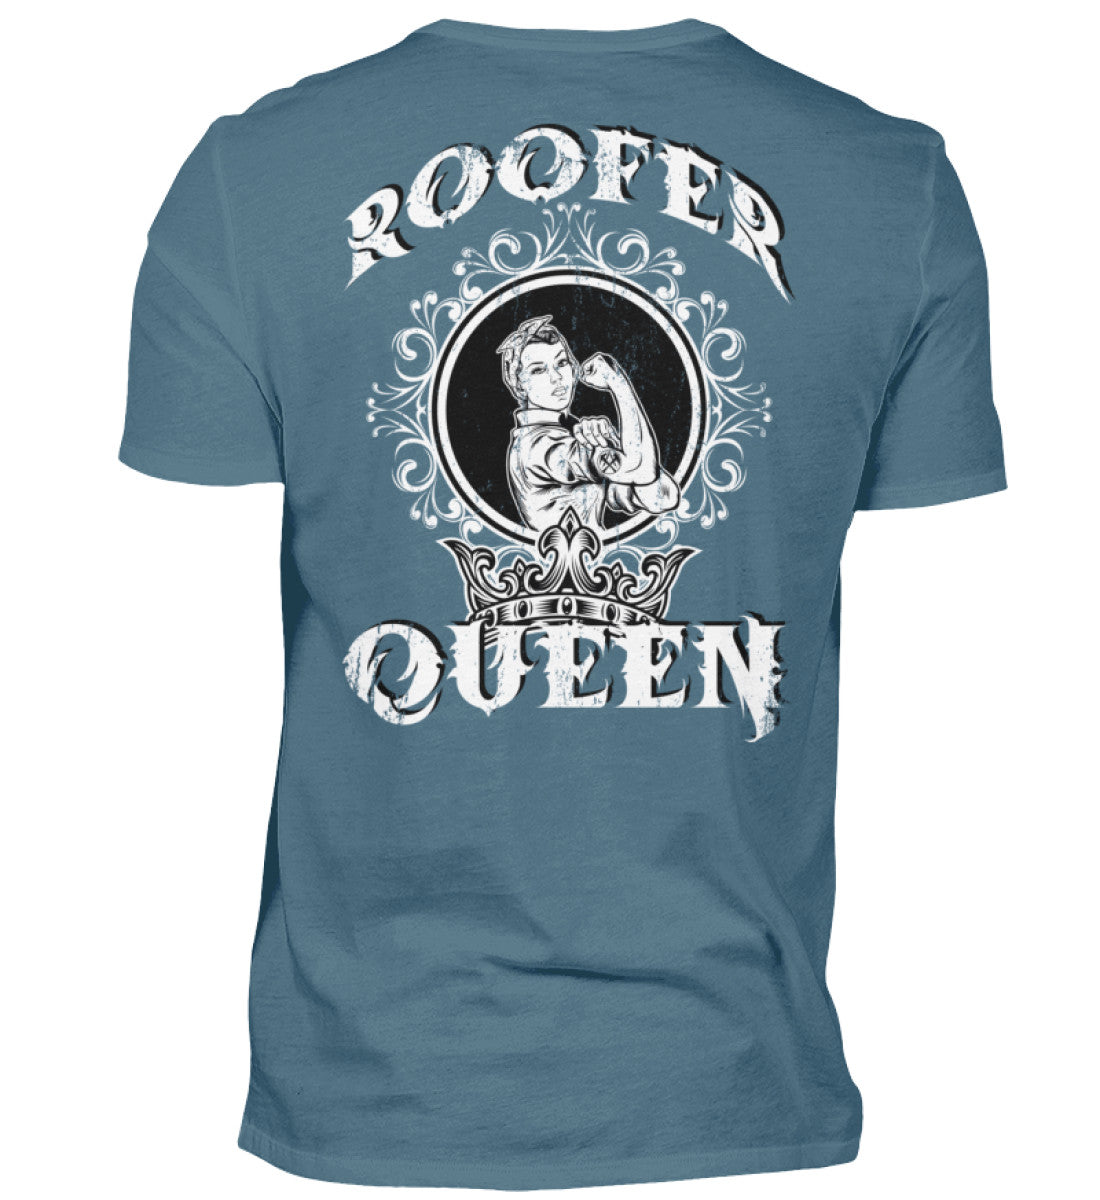 Roofer Queen Version 1.0  - Unisex Shirt €26.95 Rooferking